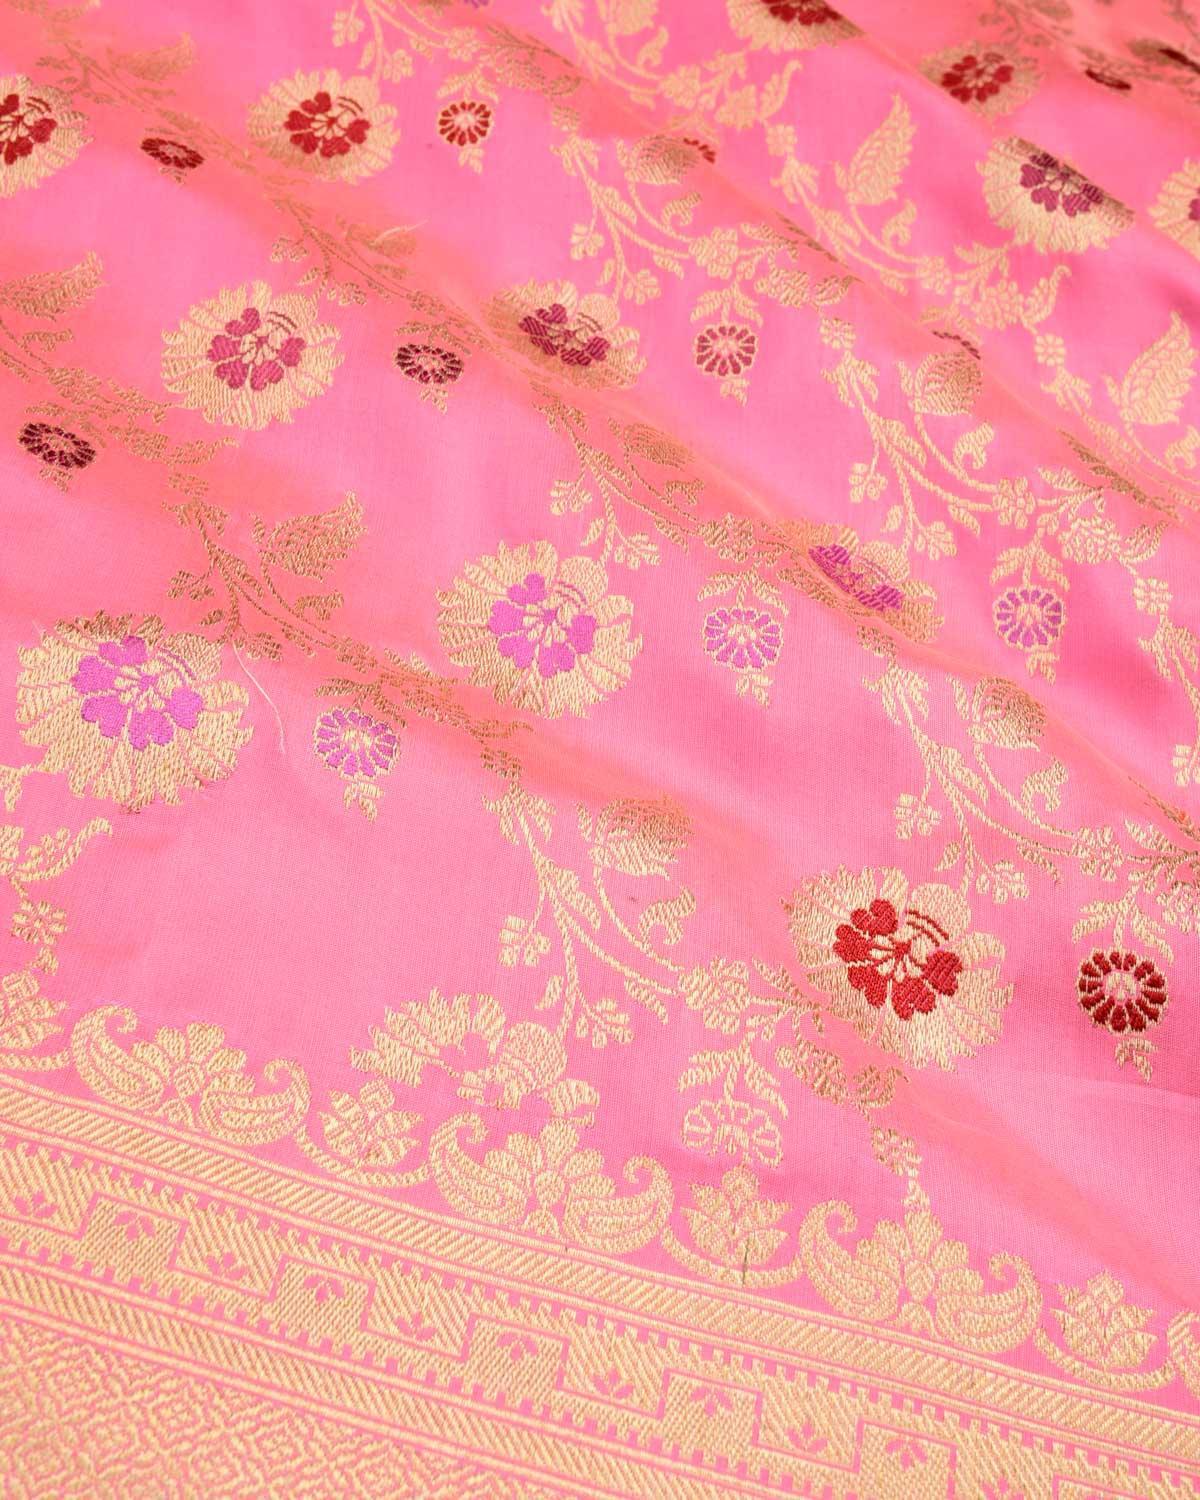 Flamingo Pink Banarasi Gold Zari with Meenekari Kadhuan Jaal Handwoven Katan Silk Saree - By HolyWeaves, Benares